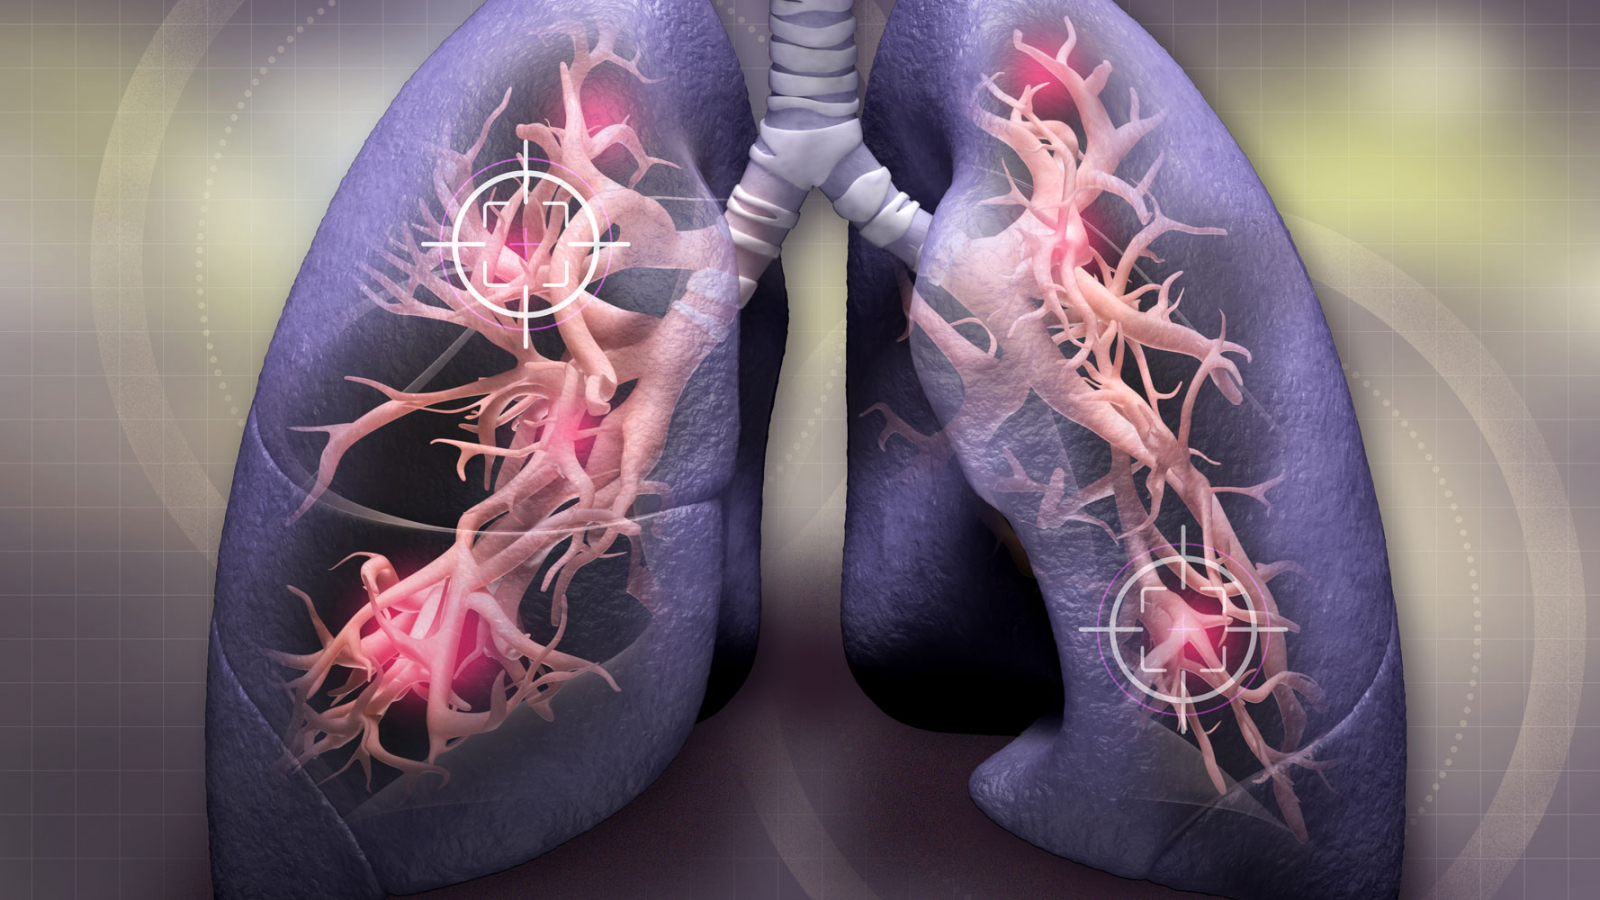 سرطان ریه نوعی سرطان است که از ریه ها شروع می شود. ریه ها دو اندام اسفنجی در قفسه سینه هستند که هنگام استنشاق اکسیژن دریافت می کنند و هنگام بازدم دی اکسید کربن آزاد می کنند.